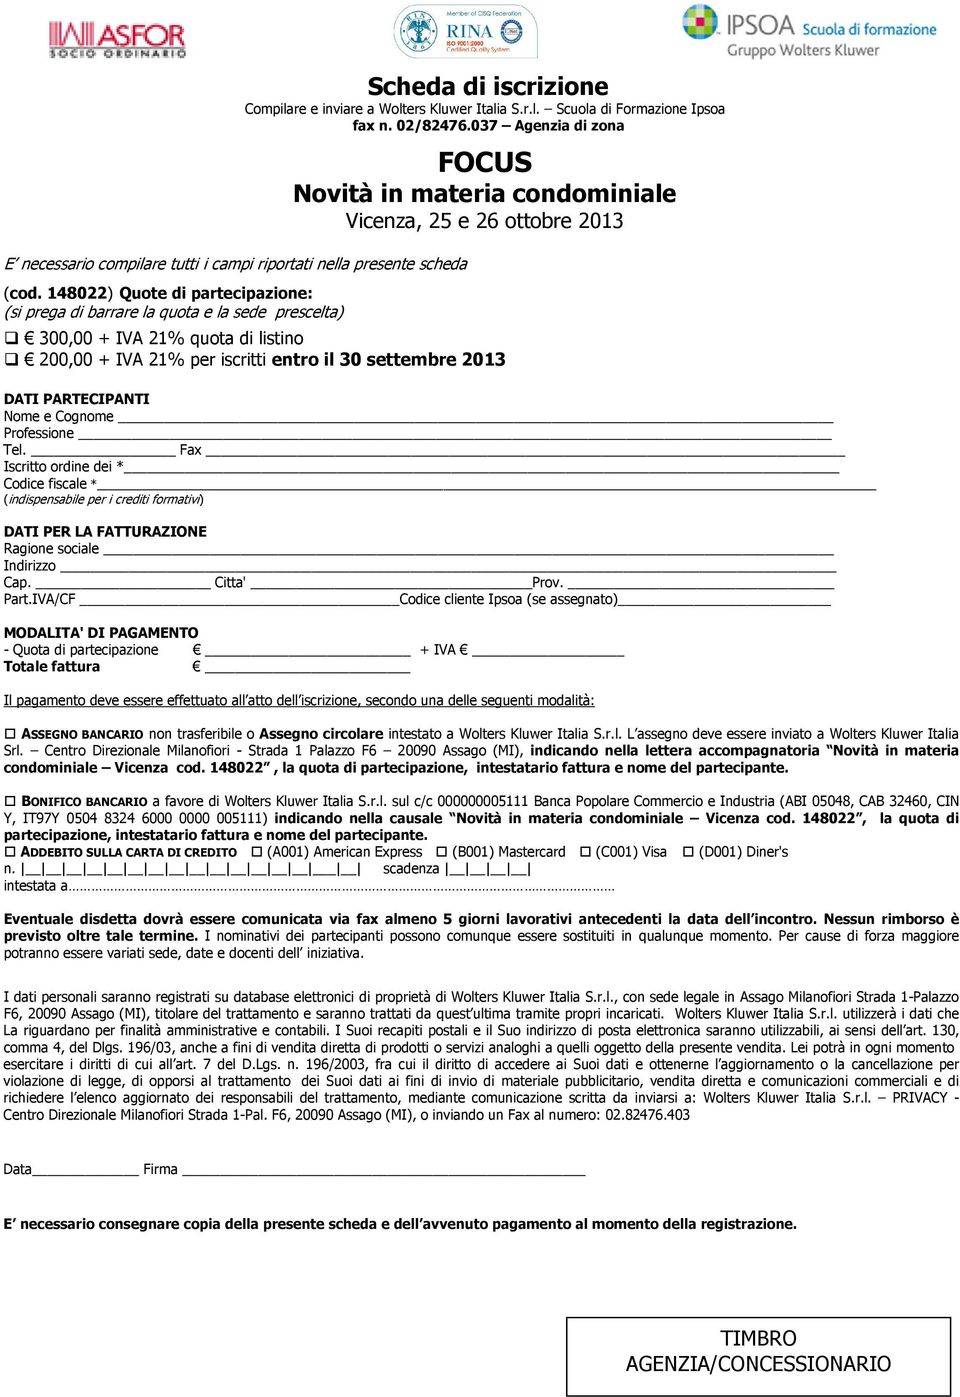 037 Agenzia di zona FOCUS Novità in materia condominiale Vicenza, 25 e 26 ottobre 2013 300,00 + IVA 21% quota di listino 200,00 + IVA 21% per iscritti entro il 30 settembre 2013 DATI PARTECIPANTI